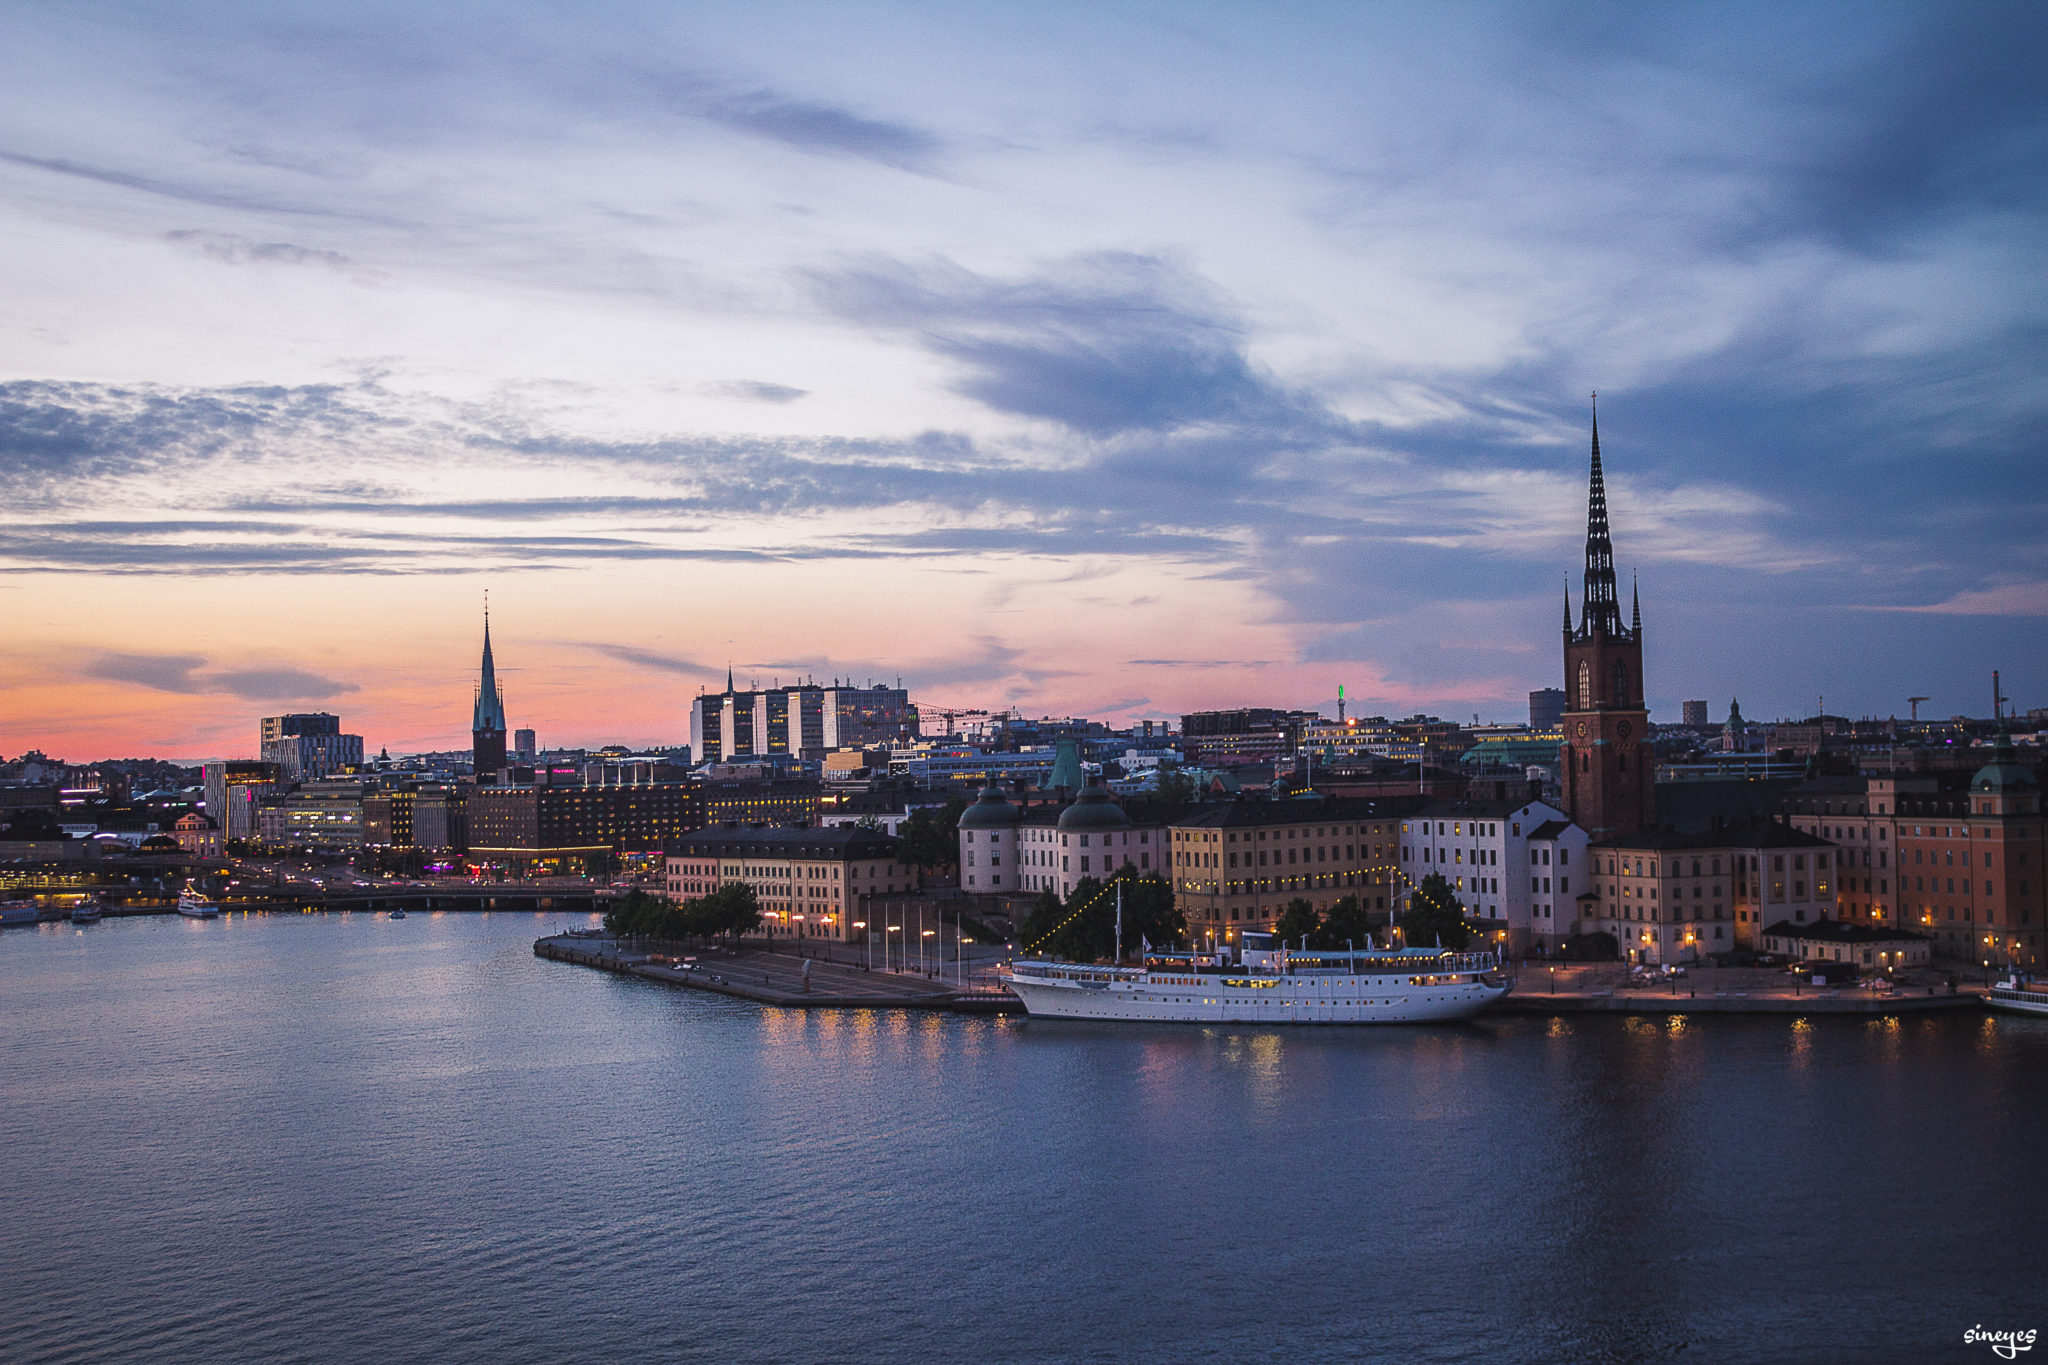 STKLM sunset - Stockholm